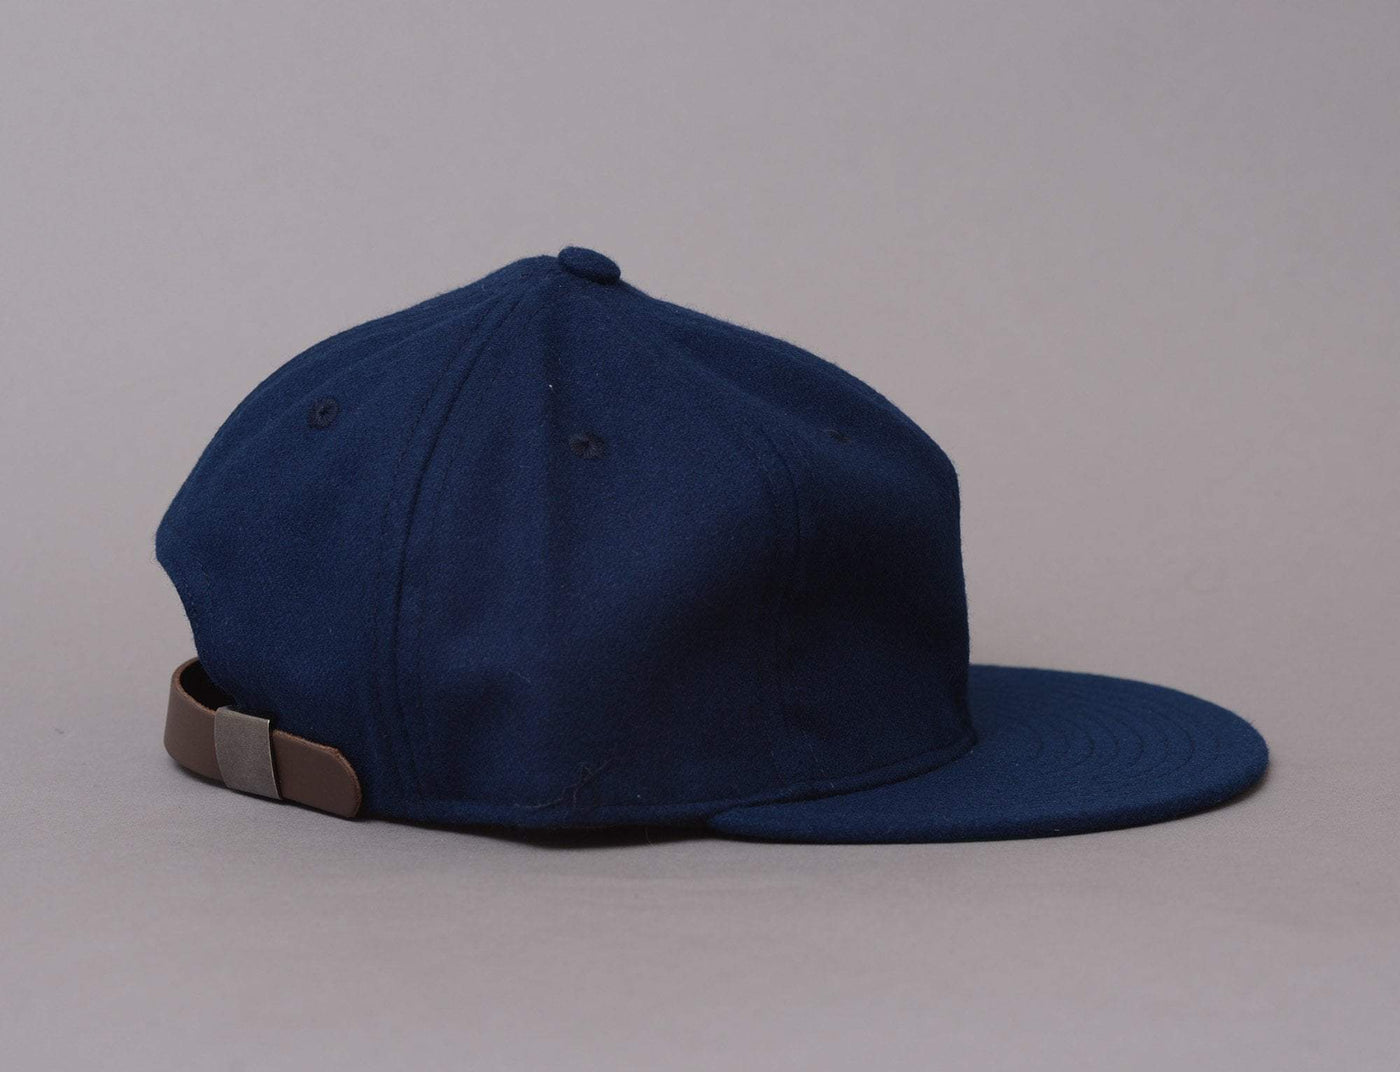 Cap Adjustable Ebbets Vintage Ballcap - Blank Navy Ebbets Field Flannels Adjustable Cap Cap / Blue / One Size